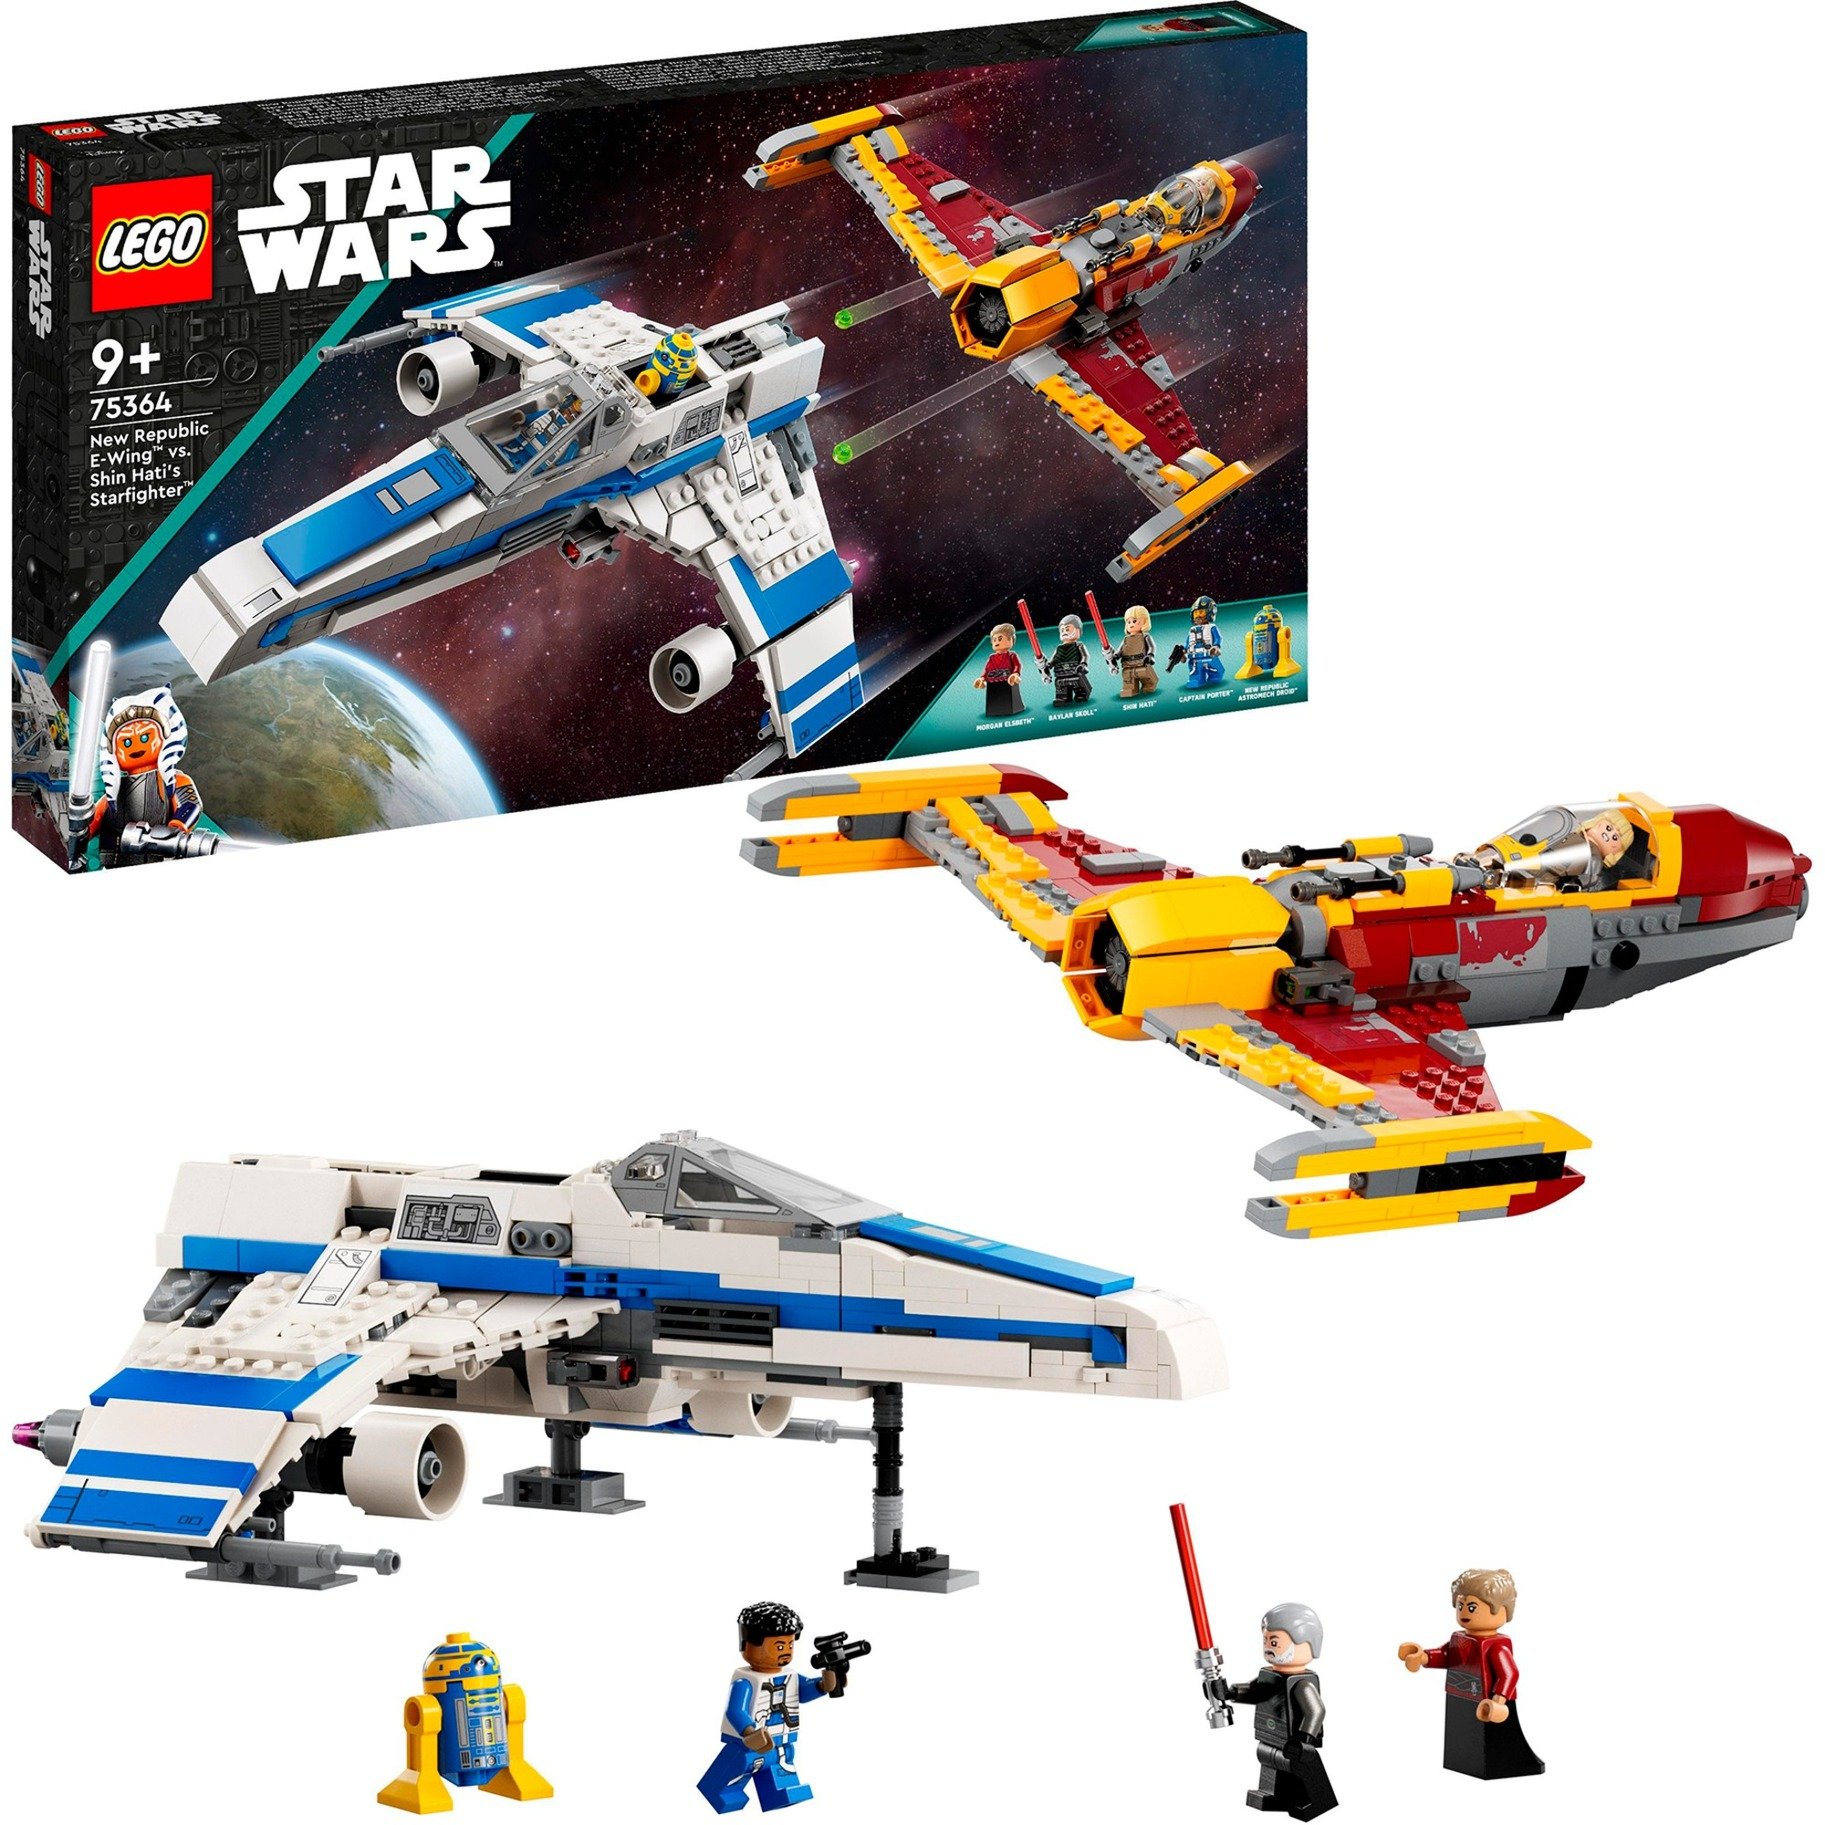 75364 Star Wars New Republic E-Wing vs. Shin Hatis Starfighter, Konstruktionsspielzeug von Lego